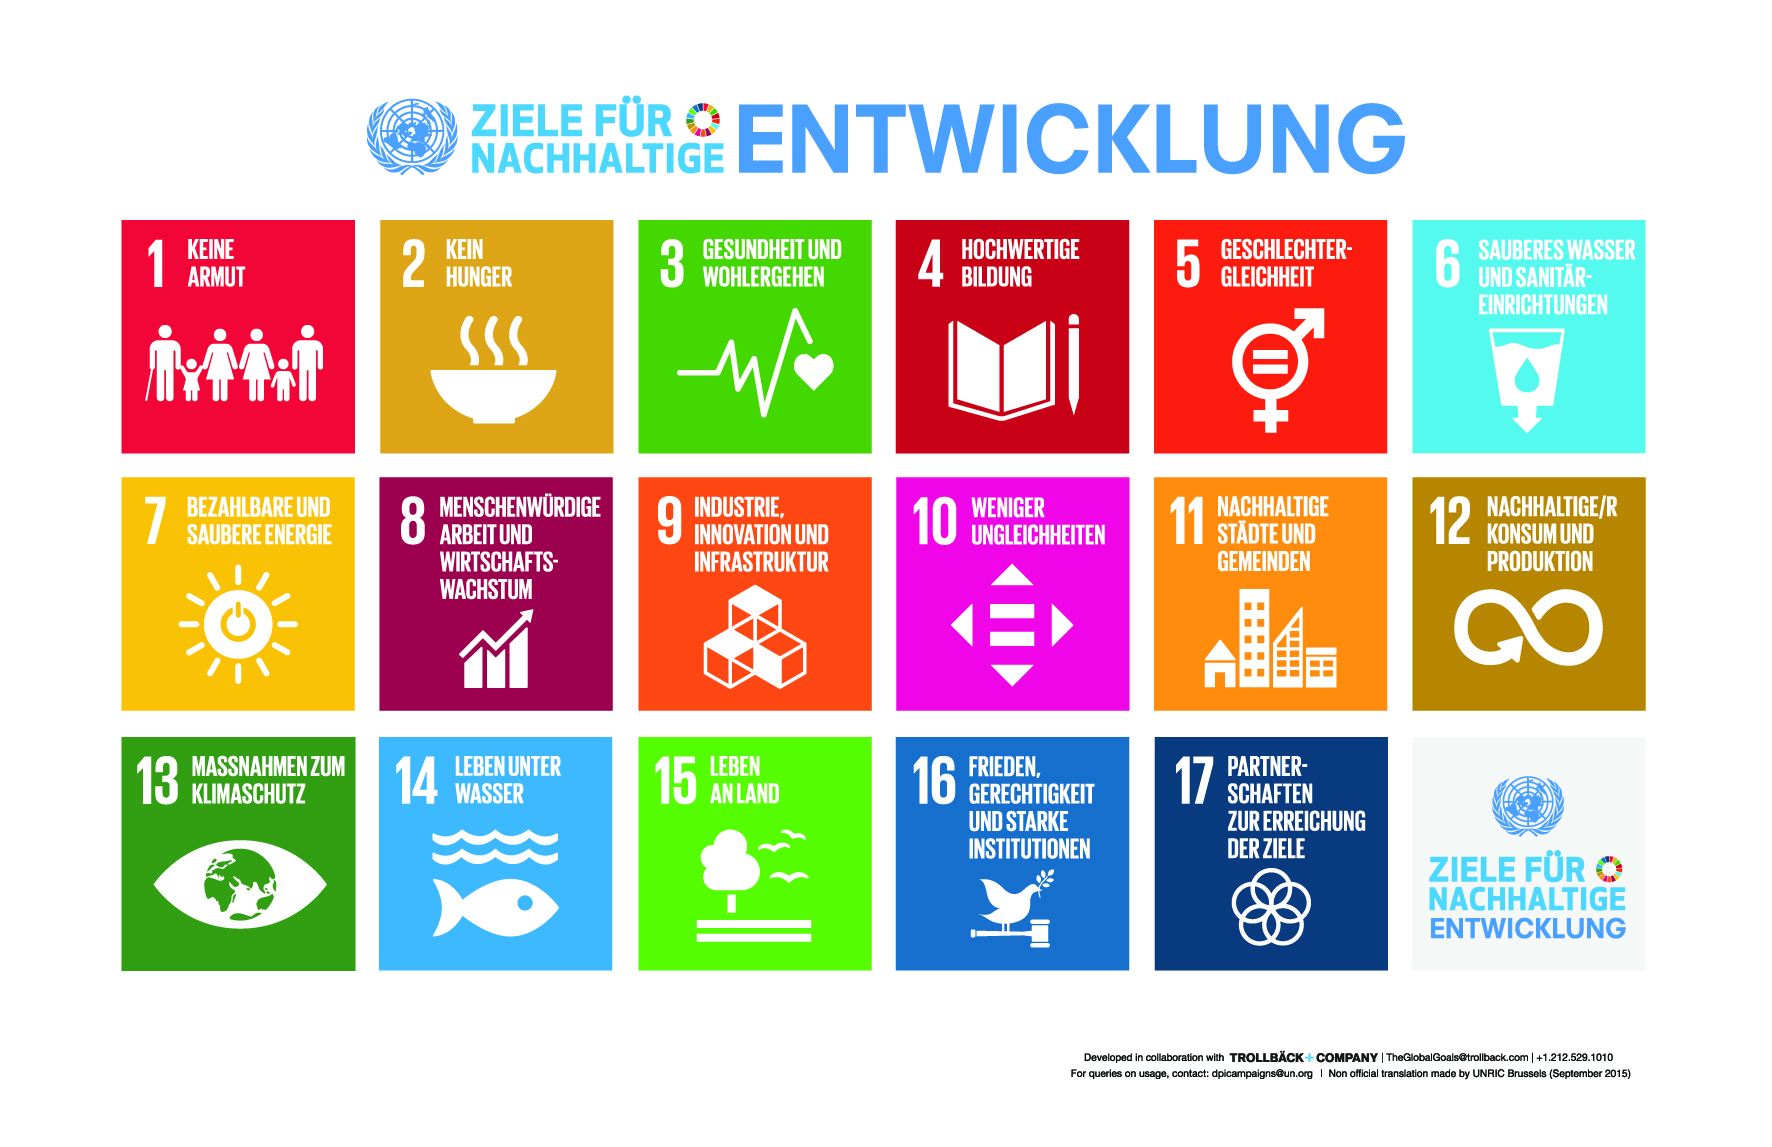 17 Ziele für Nachhaltige Entwicklung der Vereinten Nationen